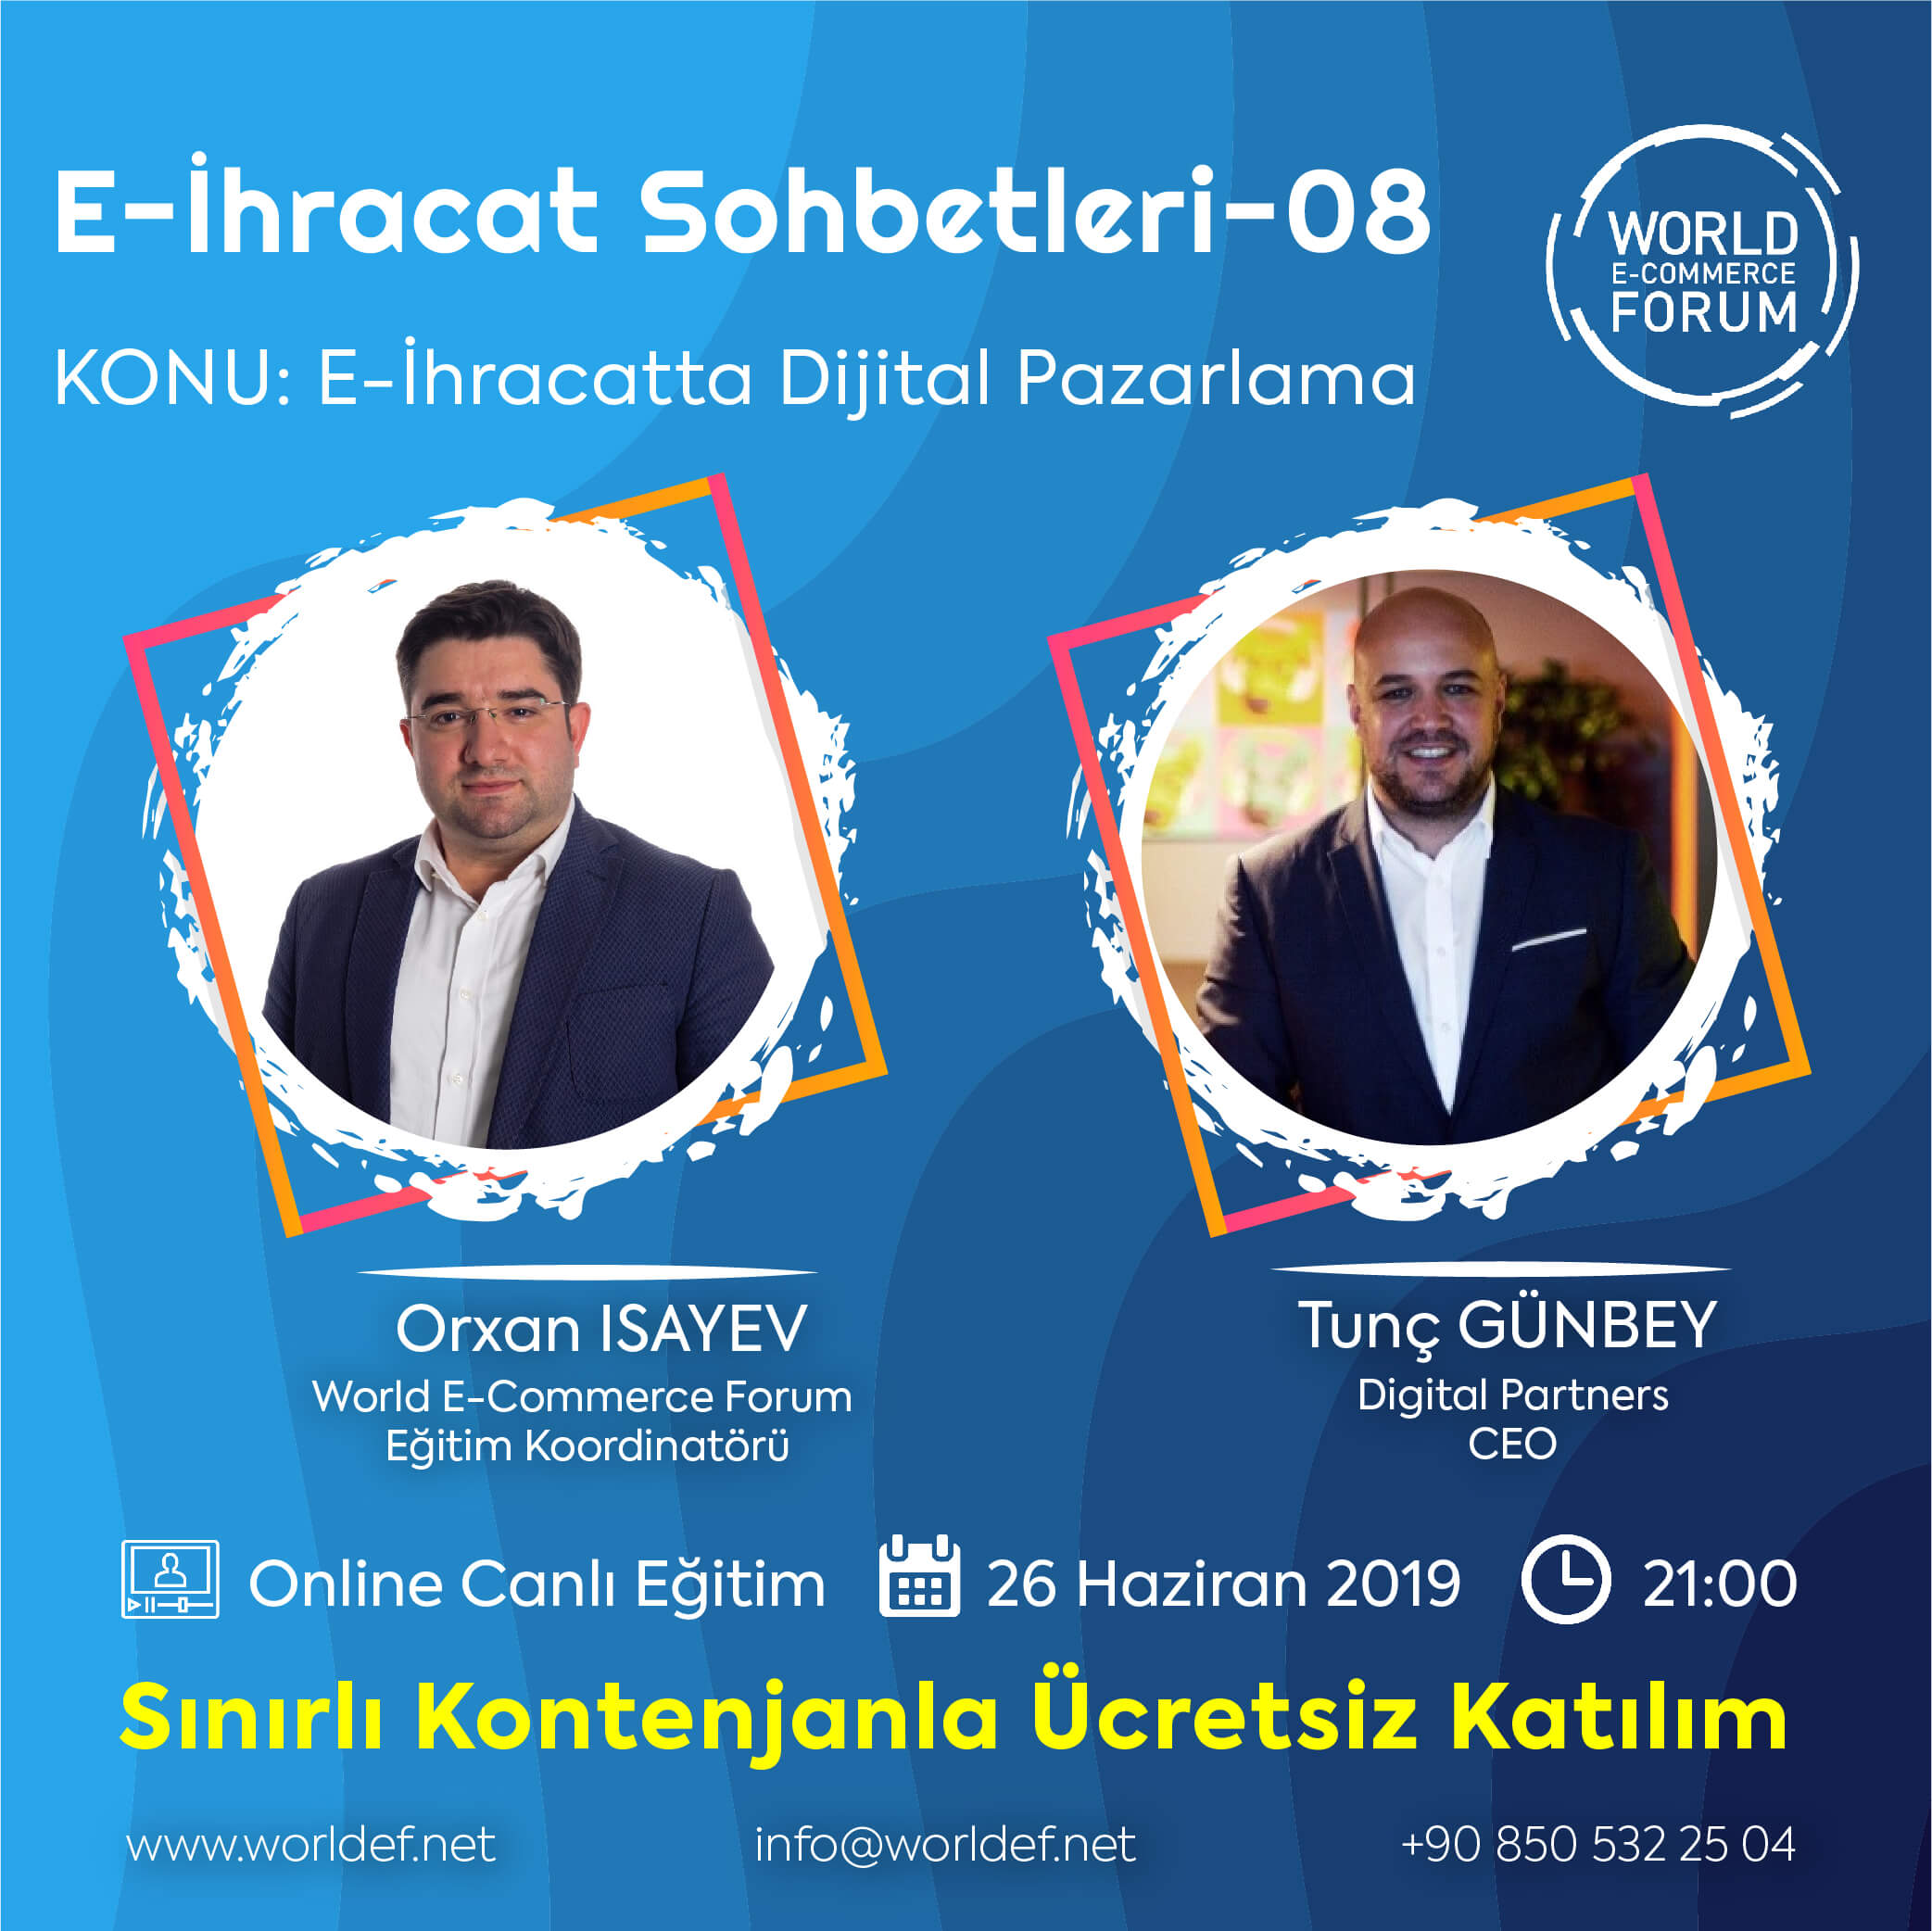 E-ihracat webinarları programında Digital Partners CEO’su Tunç Günbey, e-ihracat deneyimlerini paylaşacak!